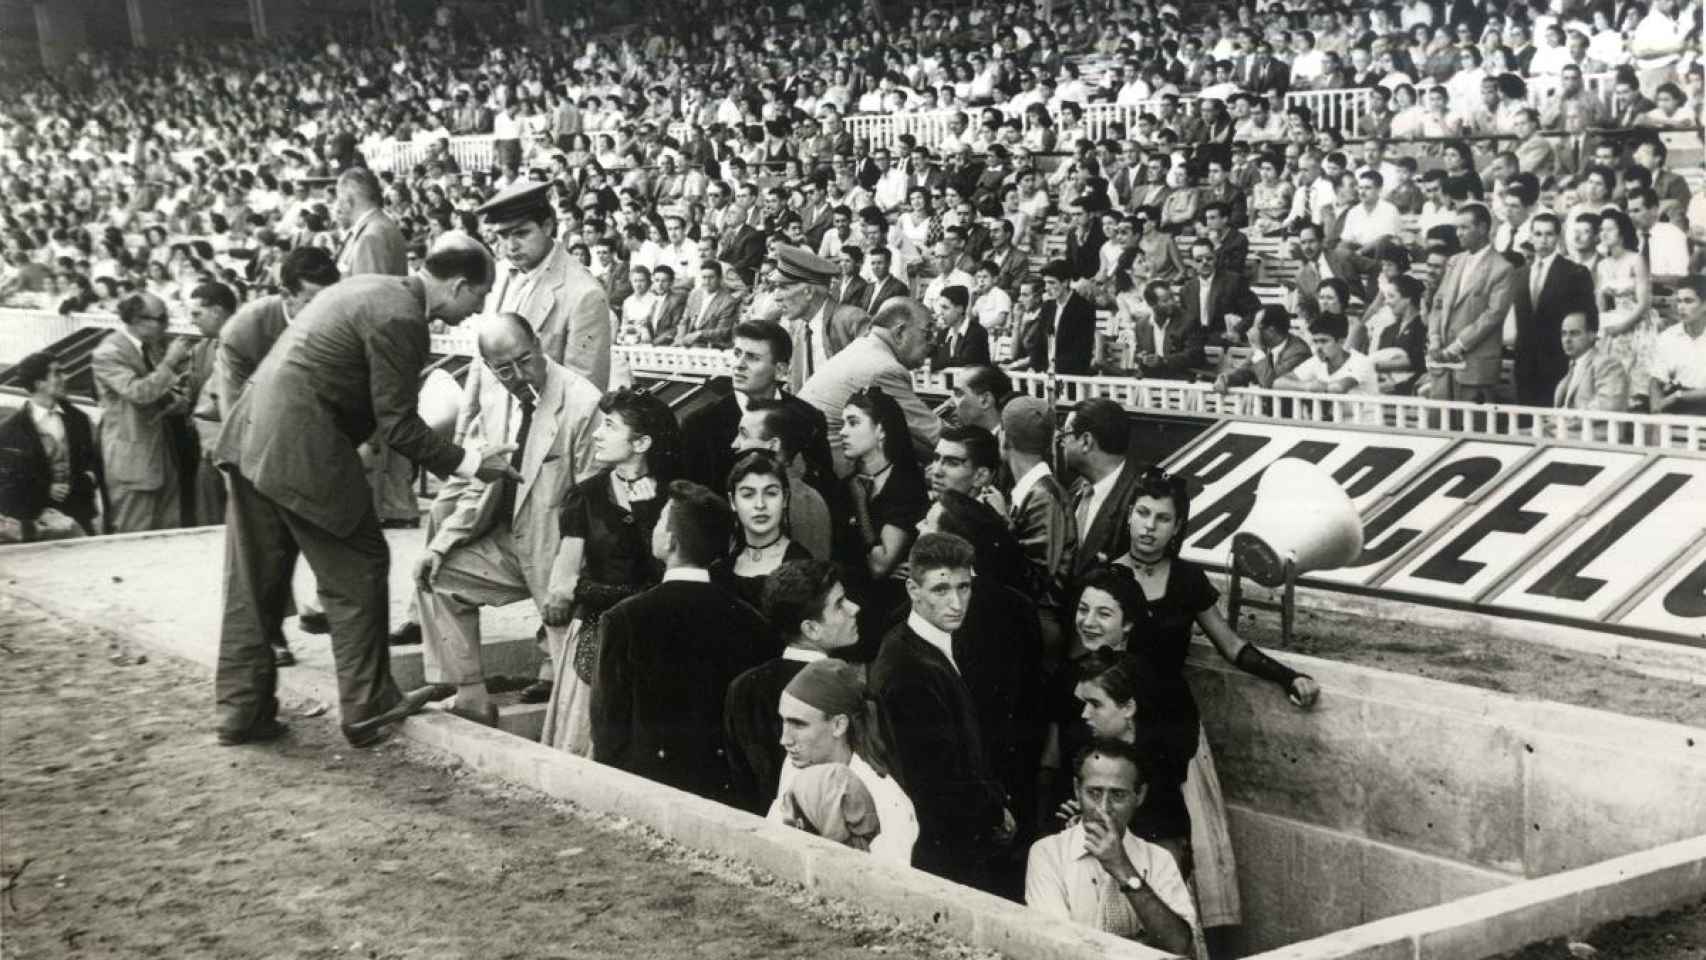 El Camp Nou en 1957 / FCB